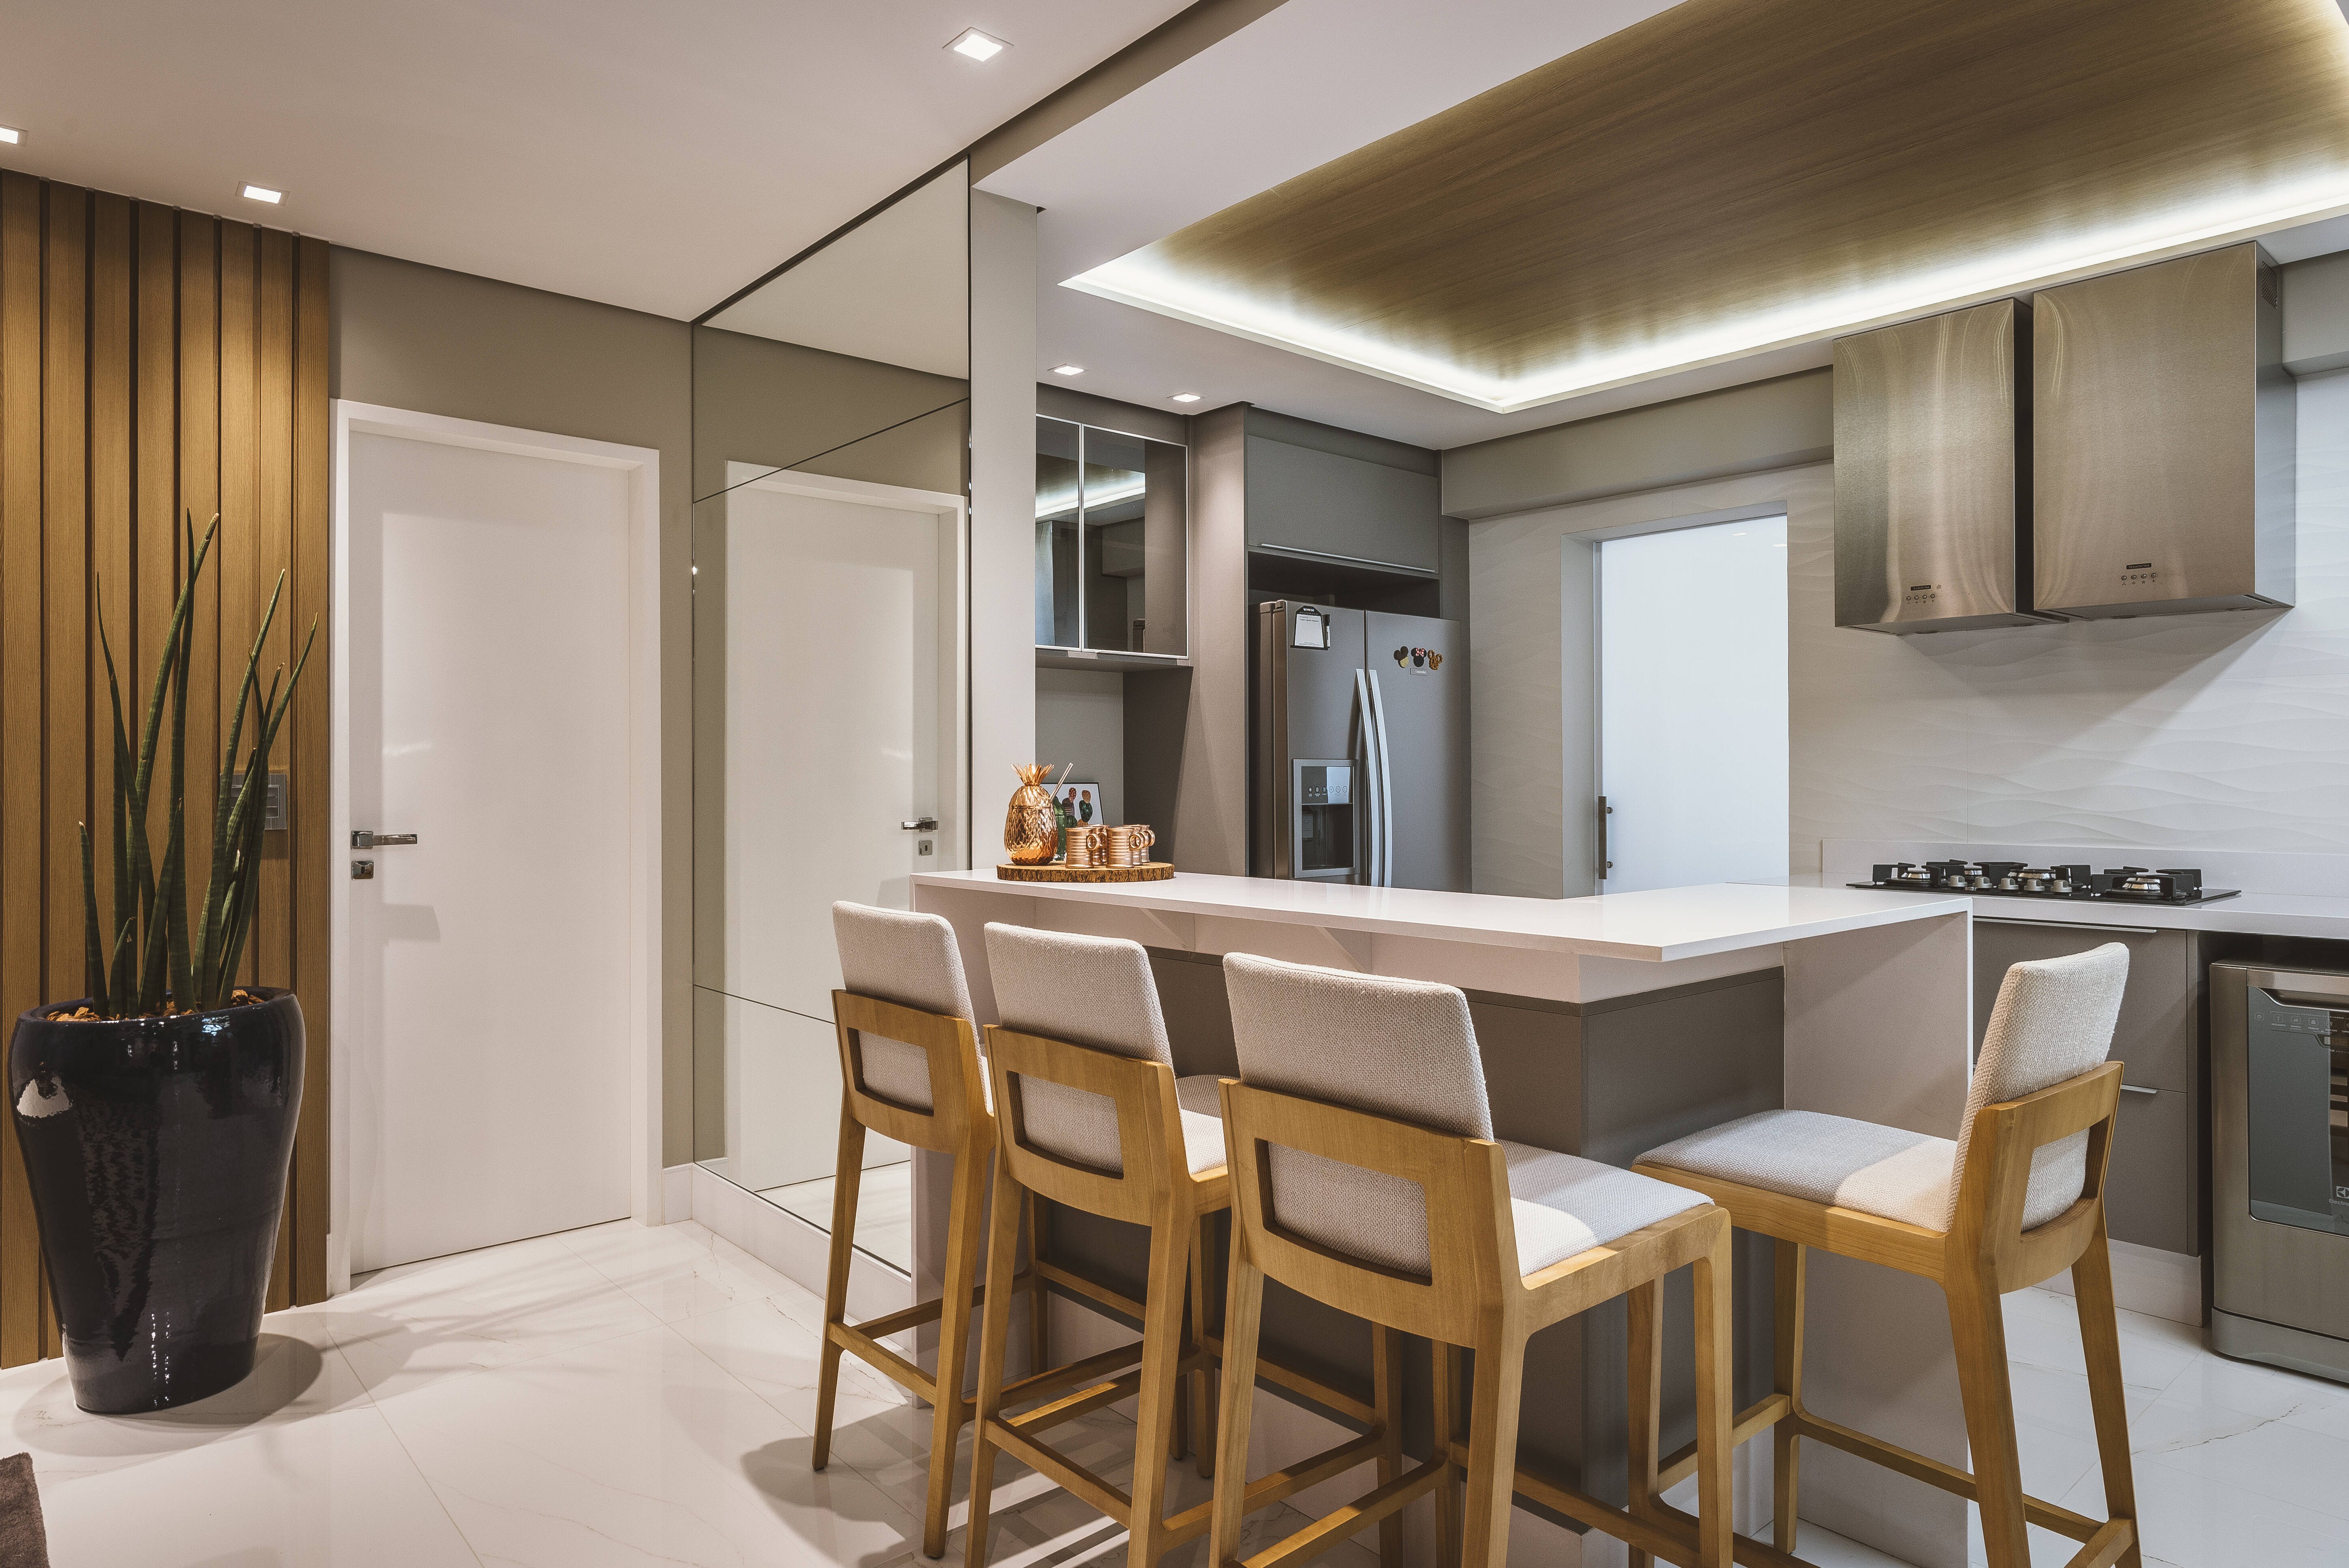 Os materiais de madeira trabalhados na cozinha e sala de jantar se contrastam de forma harmoniosa com o branco. Foto: Henrique Ribeiro/Meet Arquitetura